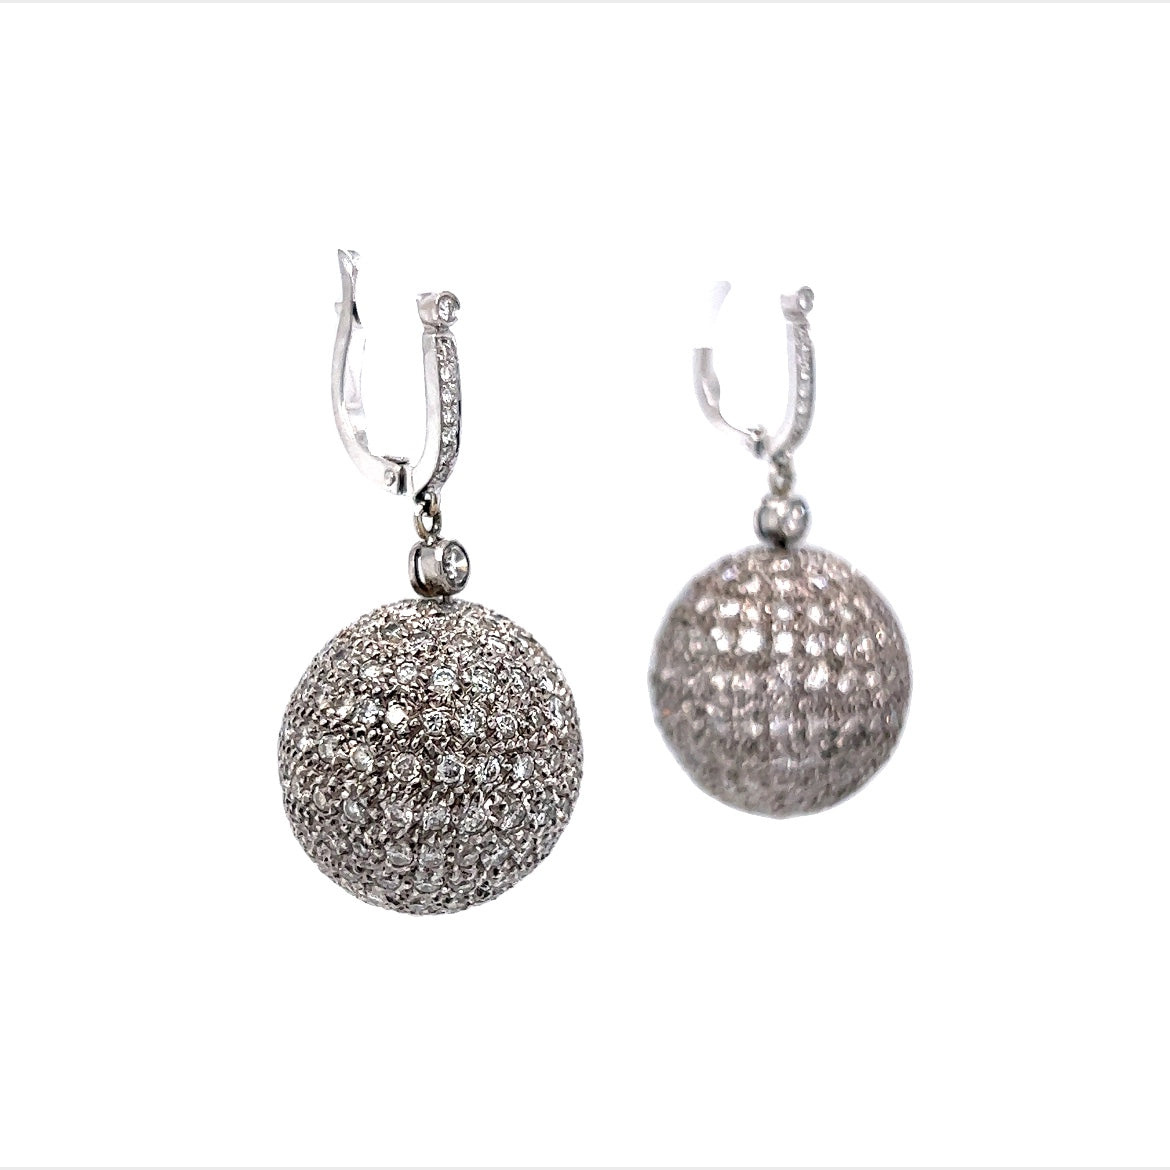 8 Carat Diamond Ball Earrings in 18k White Gold